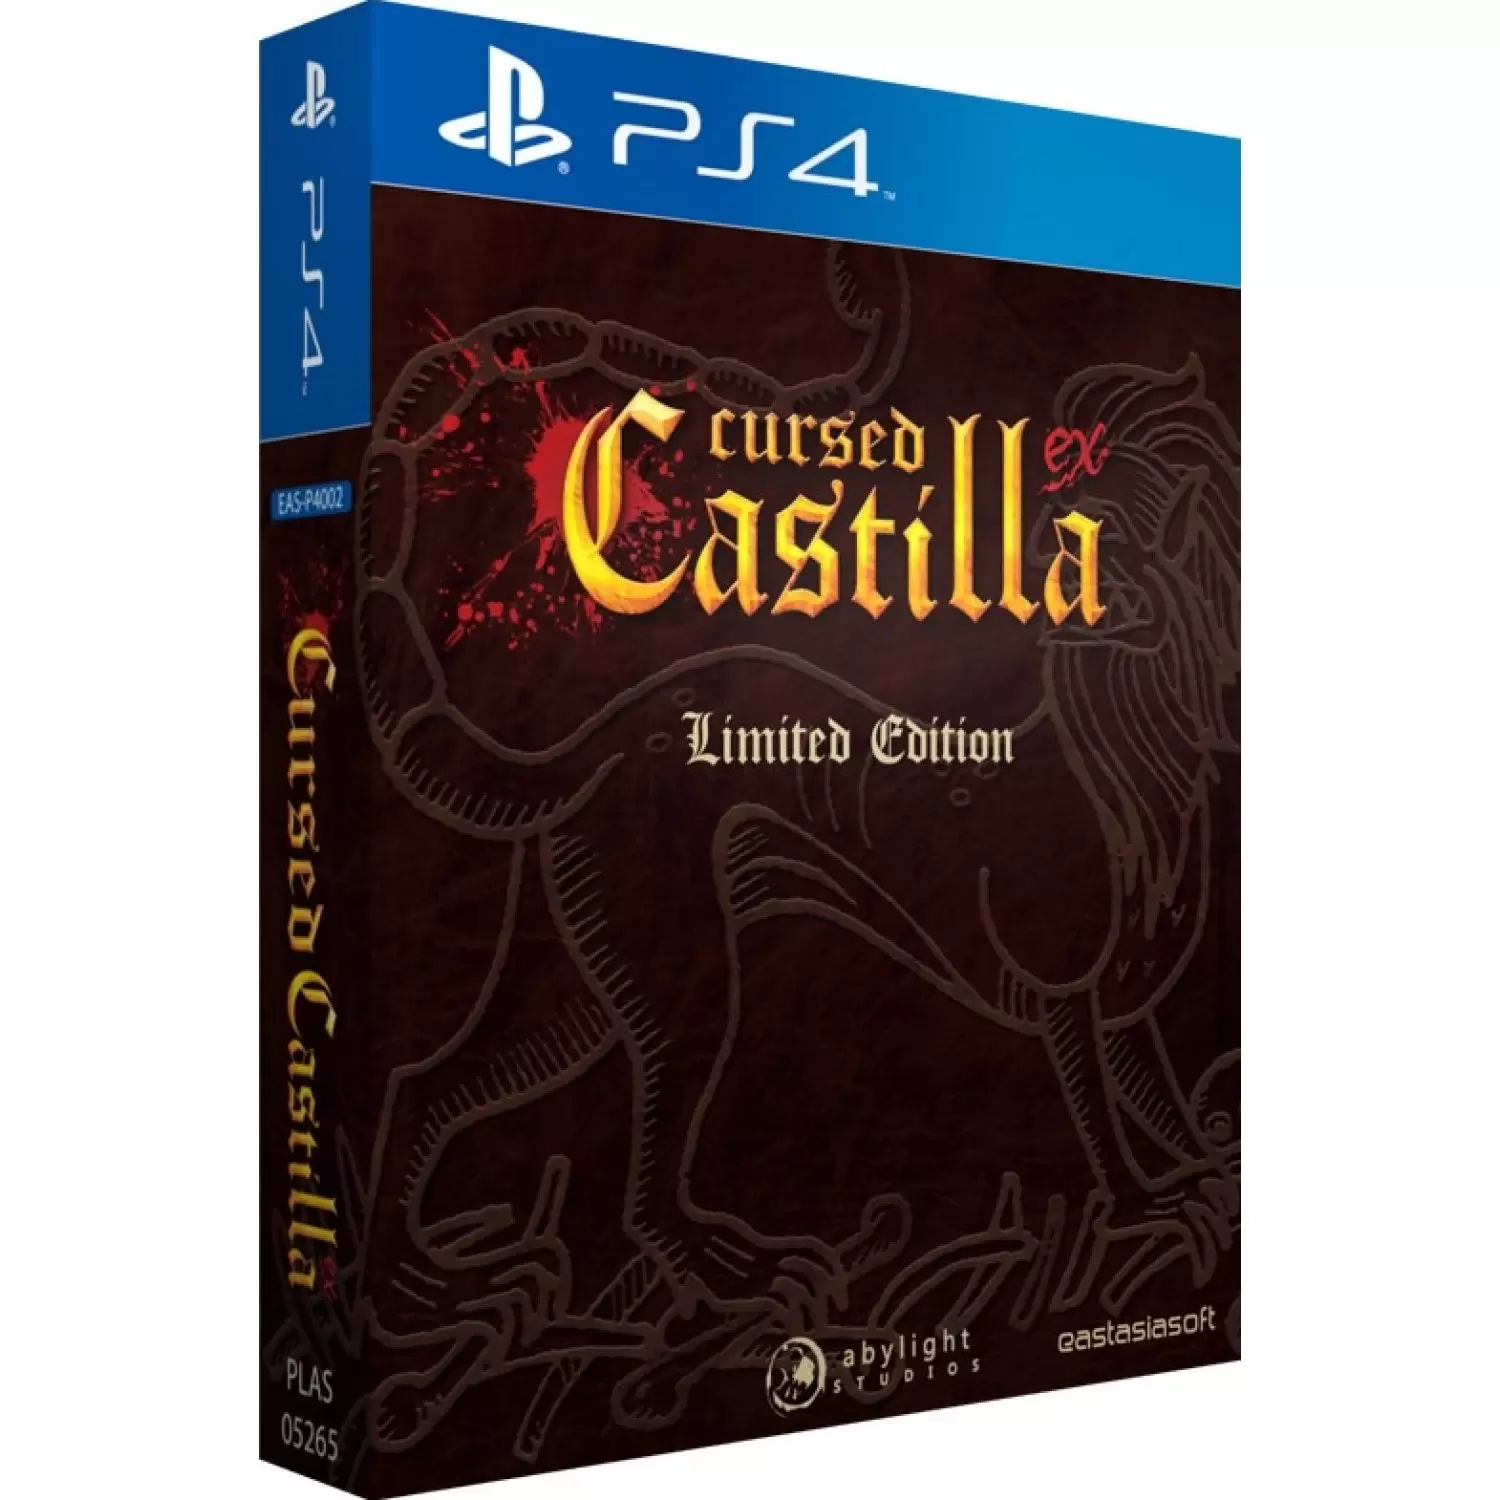 PS4 Games - Cursed Castilla EX